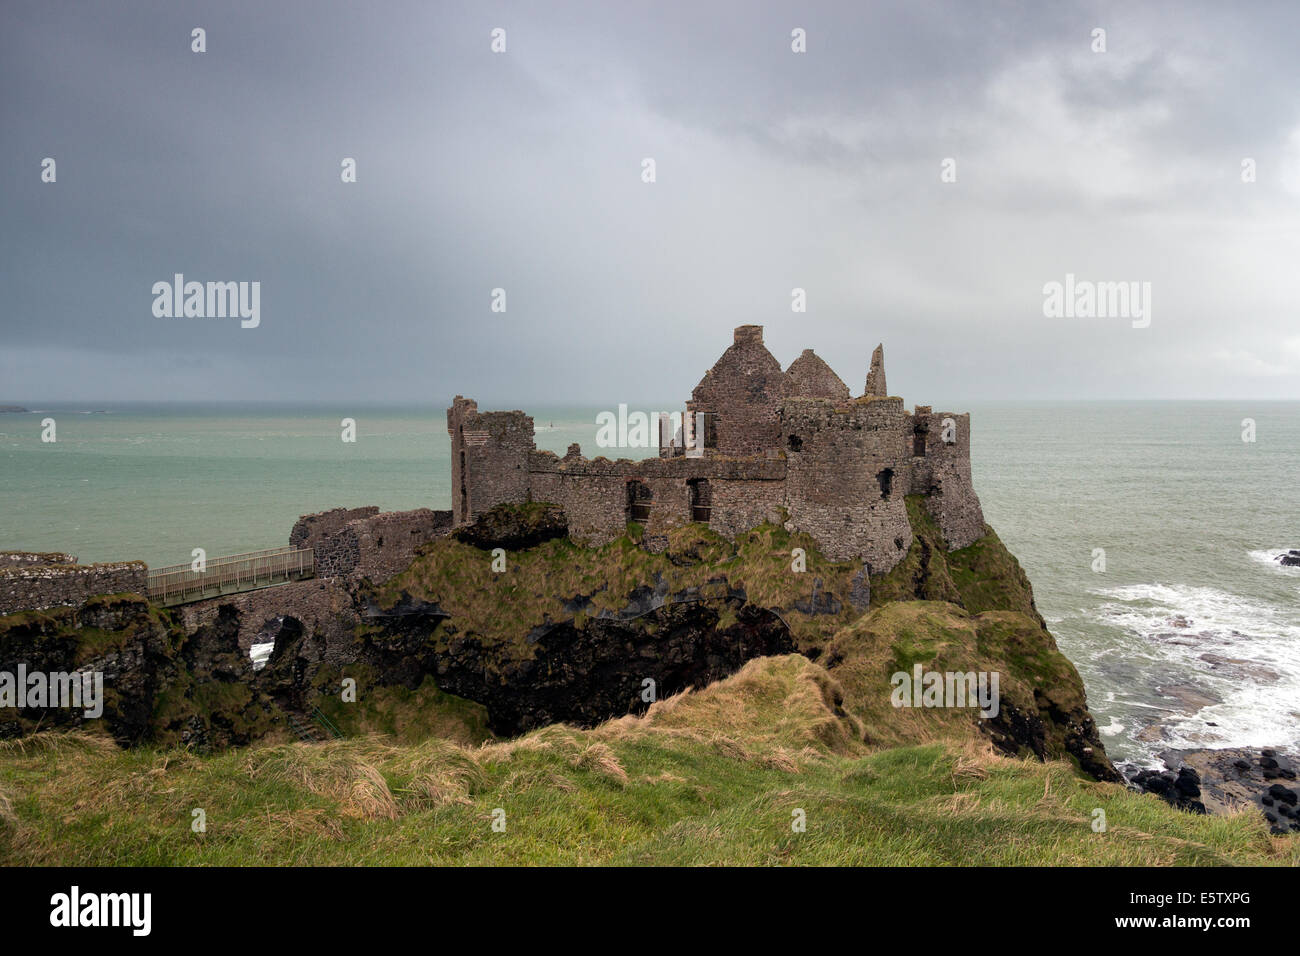 Castillo de Dunluce, ruinas de un castillo medieval en Irlanda del Norte Foto de stock